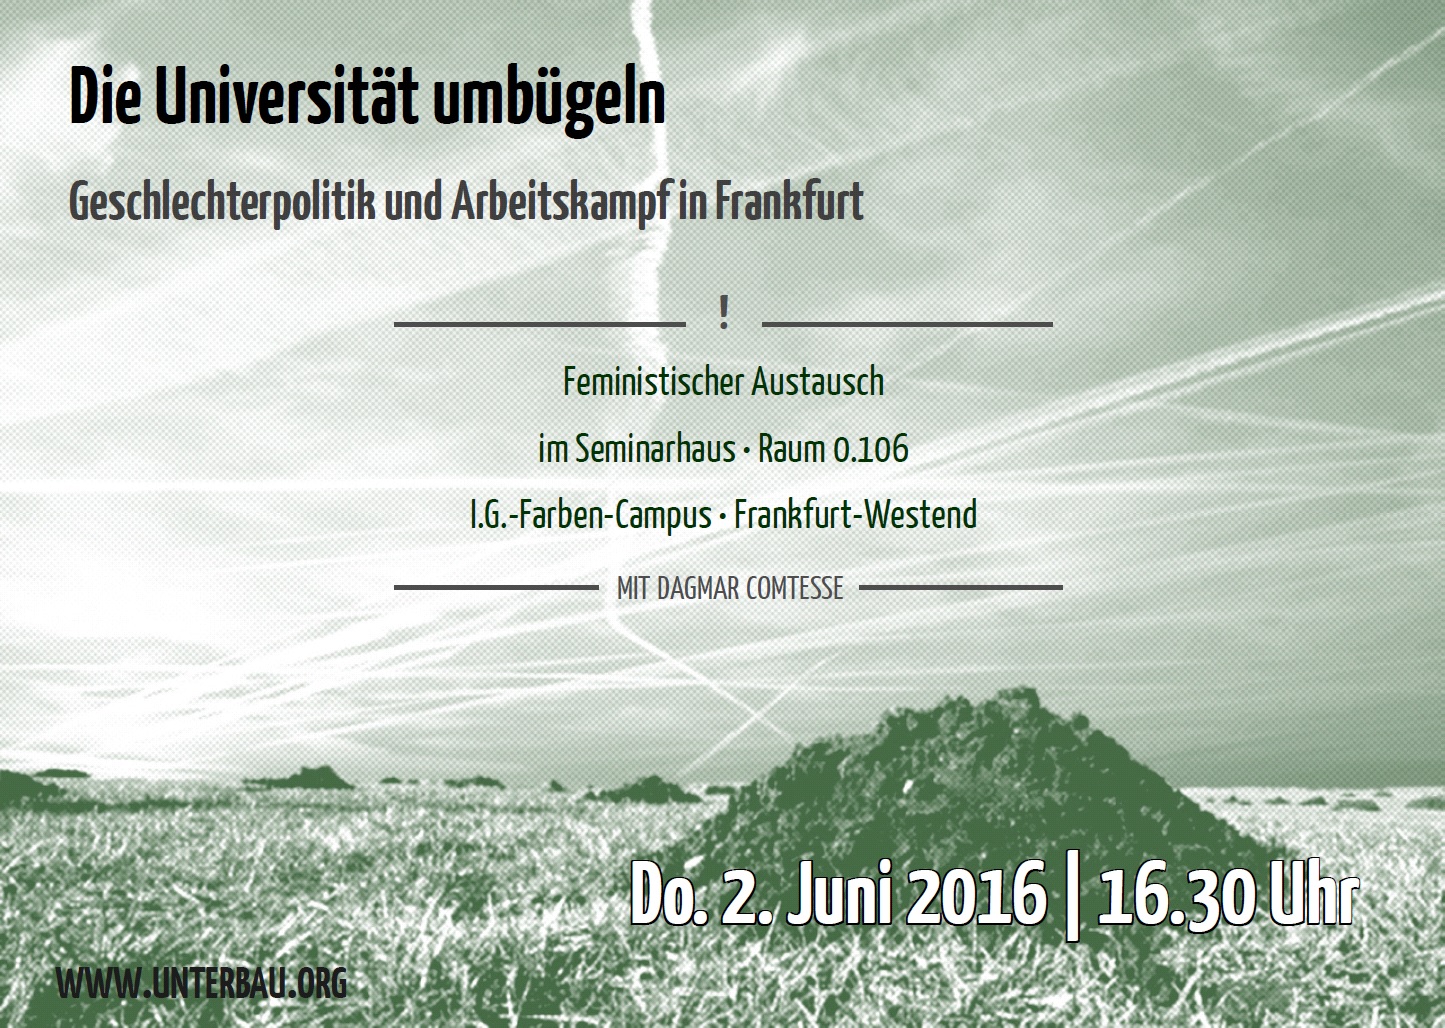 Die Universität umbügeln: Geschlechterpolitik und Arbeitskampf in Frankfurt